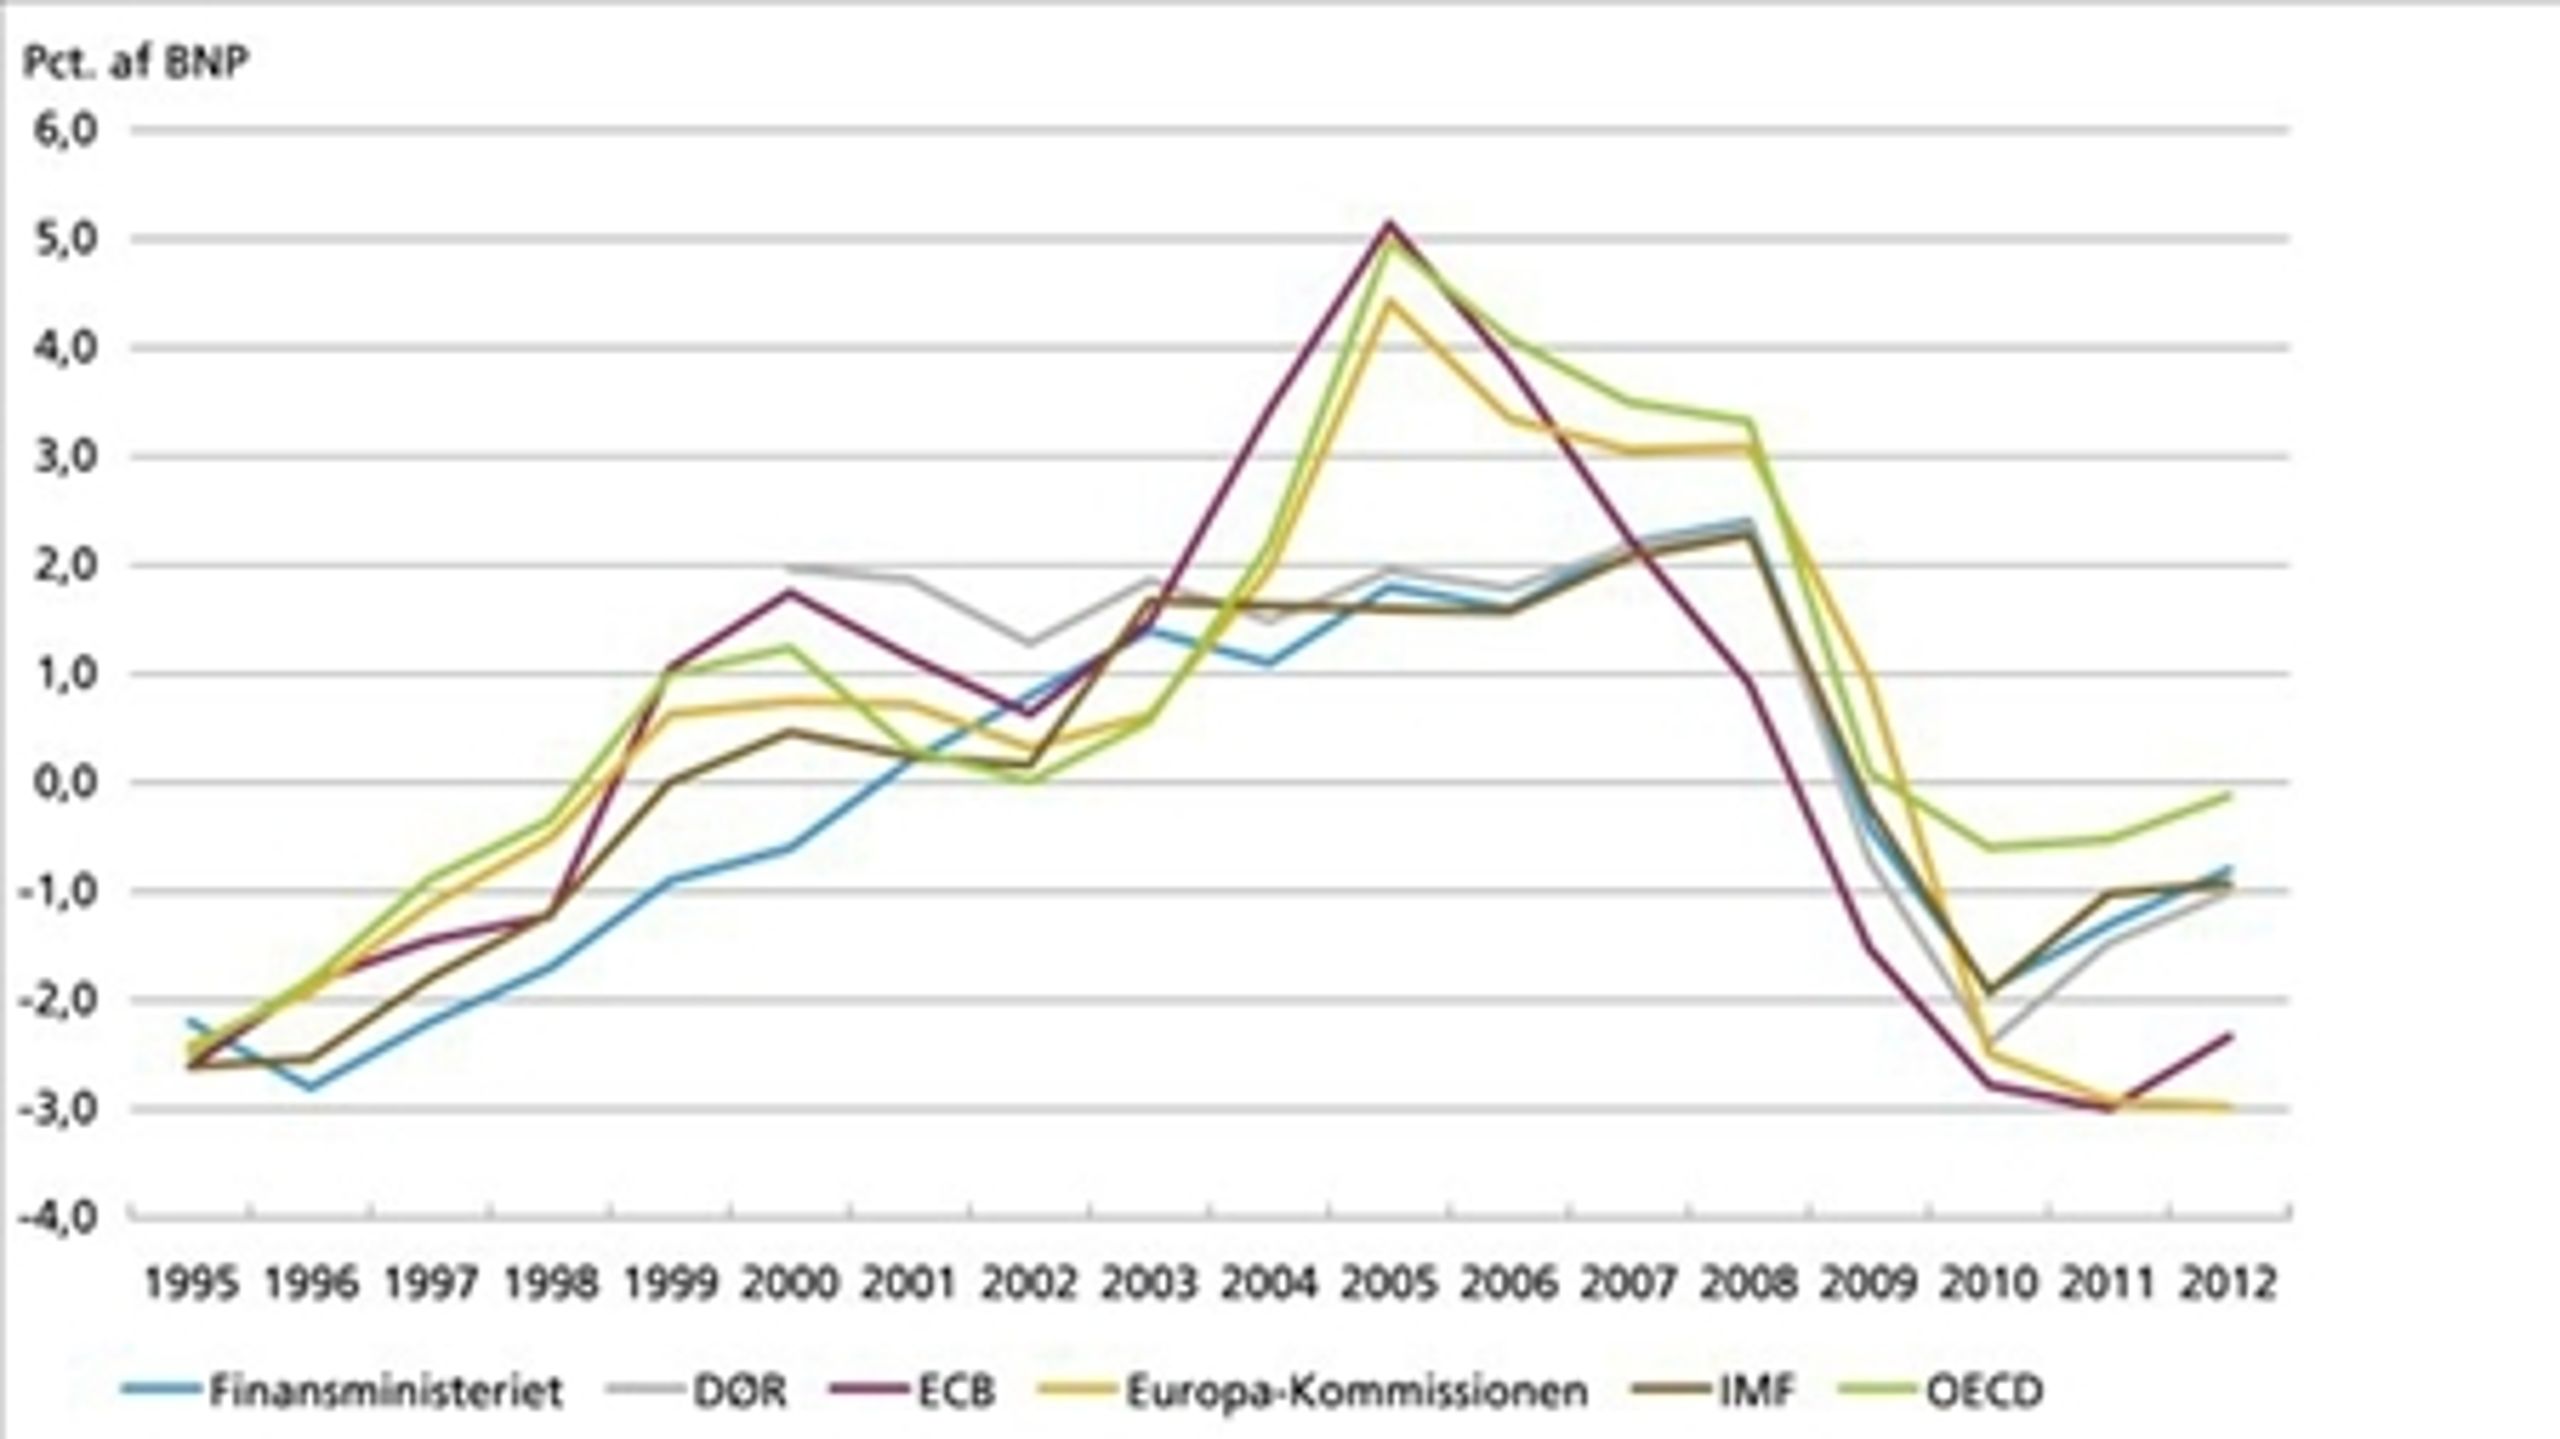 Beregningerne af Danmarks strukturelle saldo i perioden 1995 til 2012 varierer, alt efter hvem der beregner.